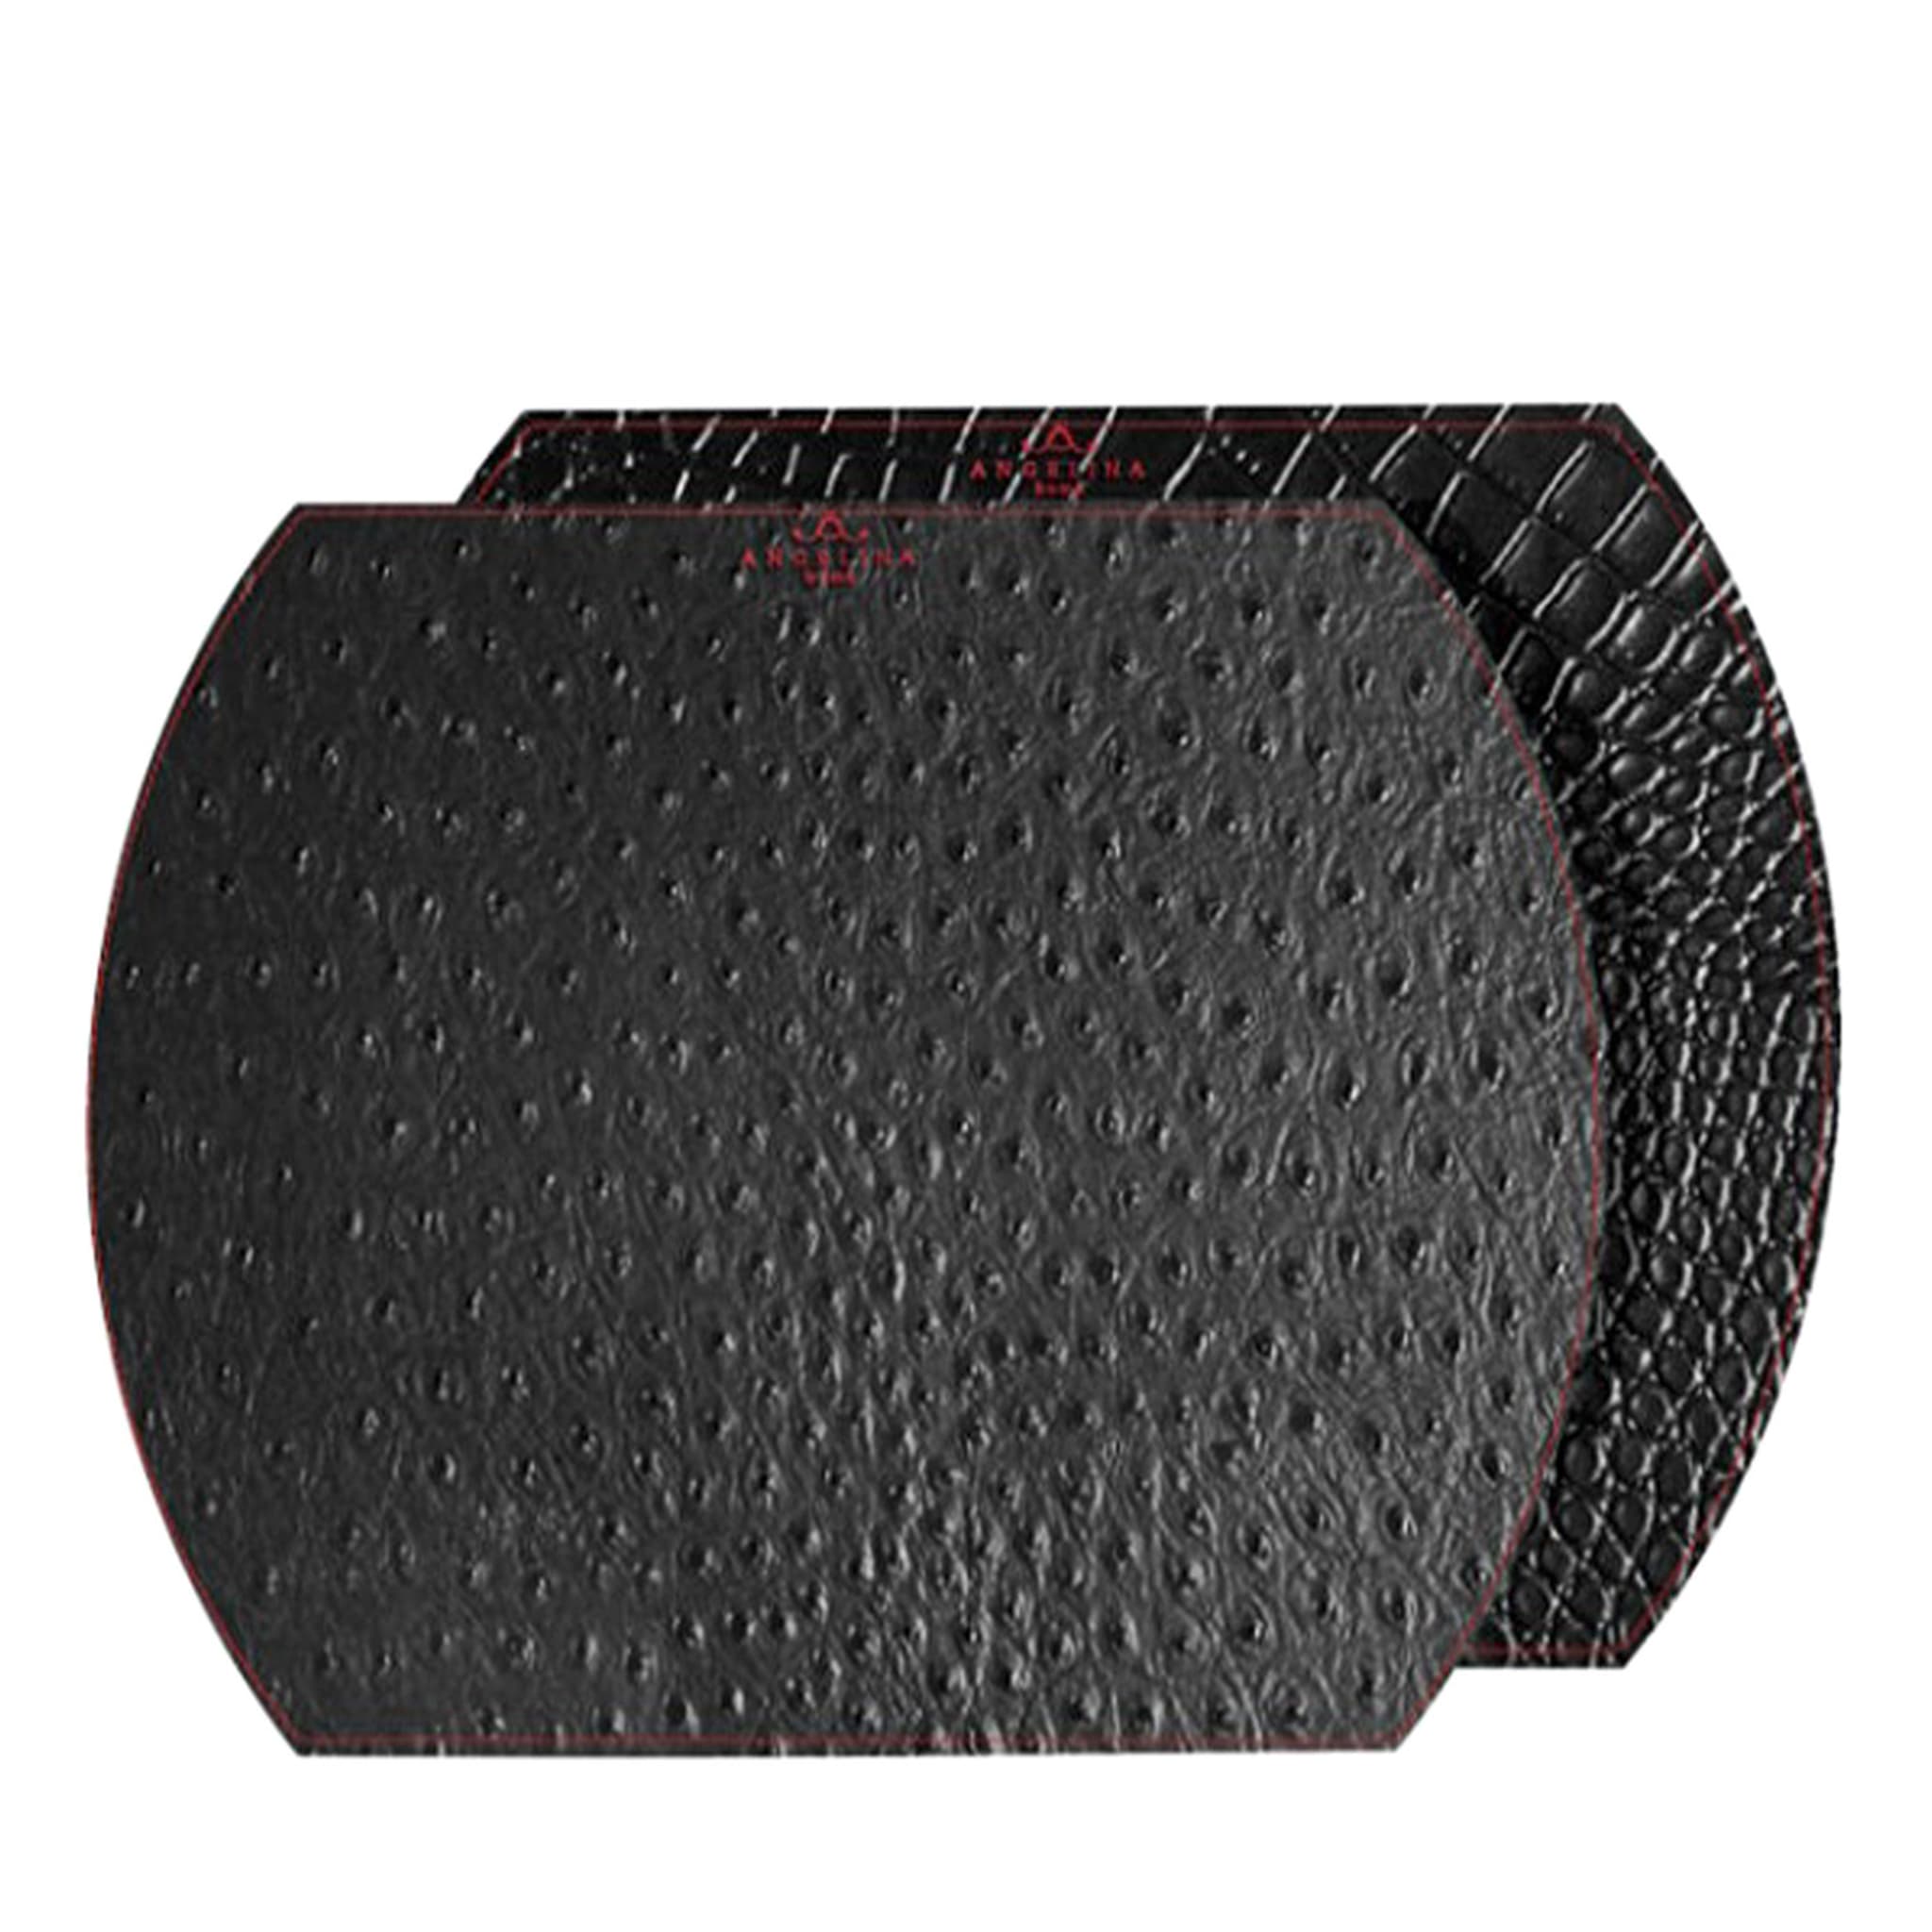 Kenya Medium Set of 2 Black Leather Placemats - Main view